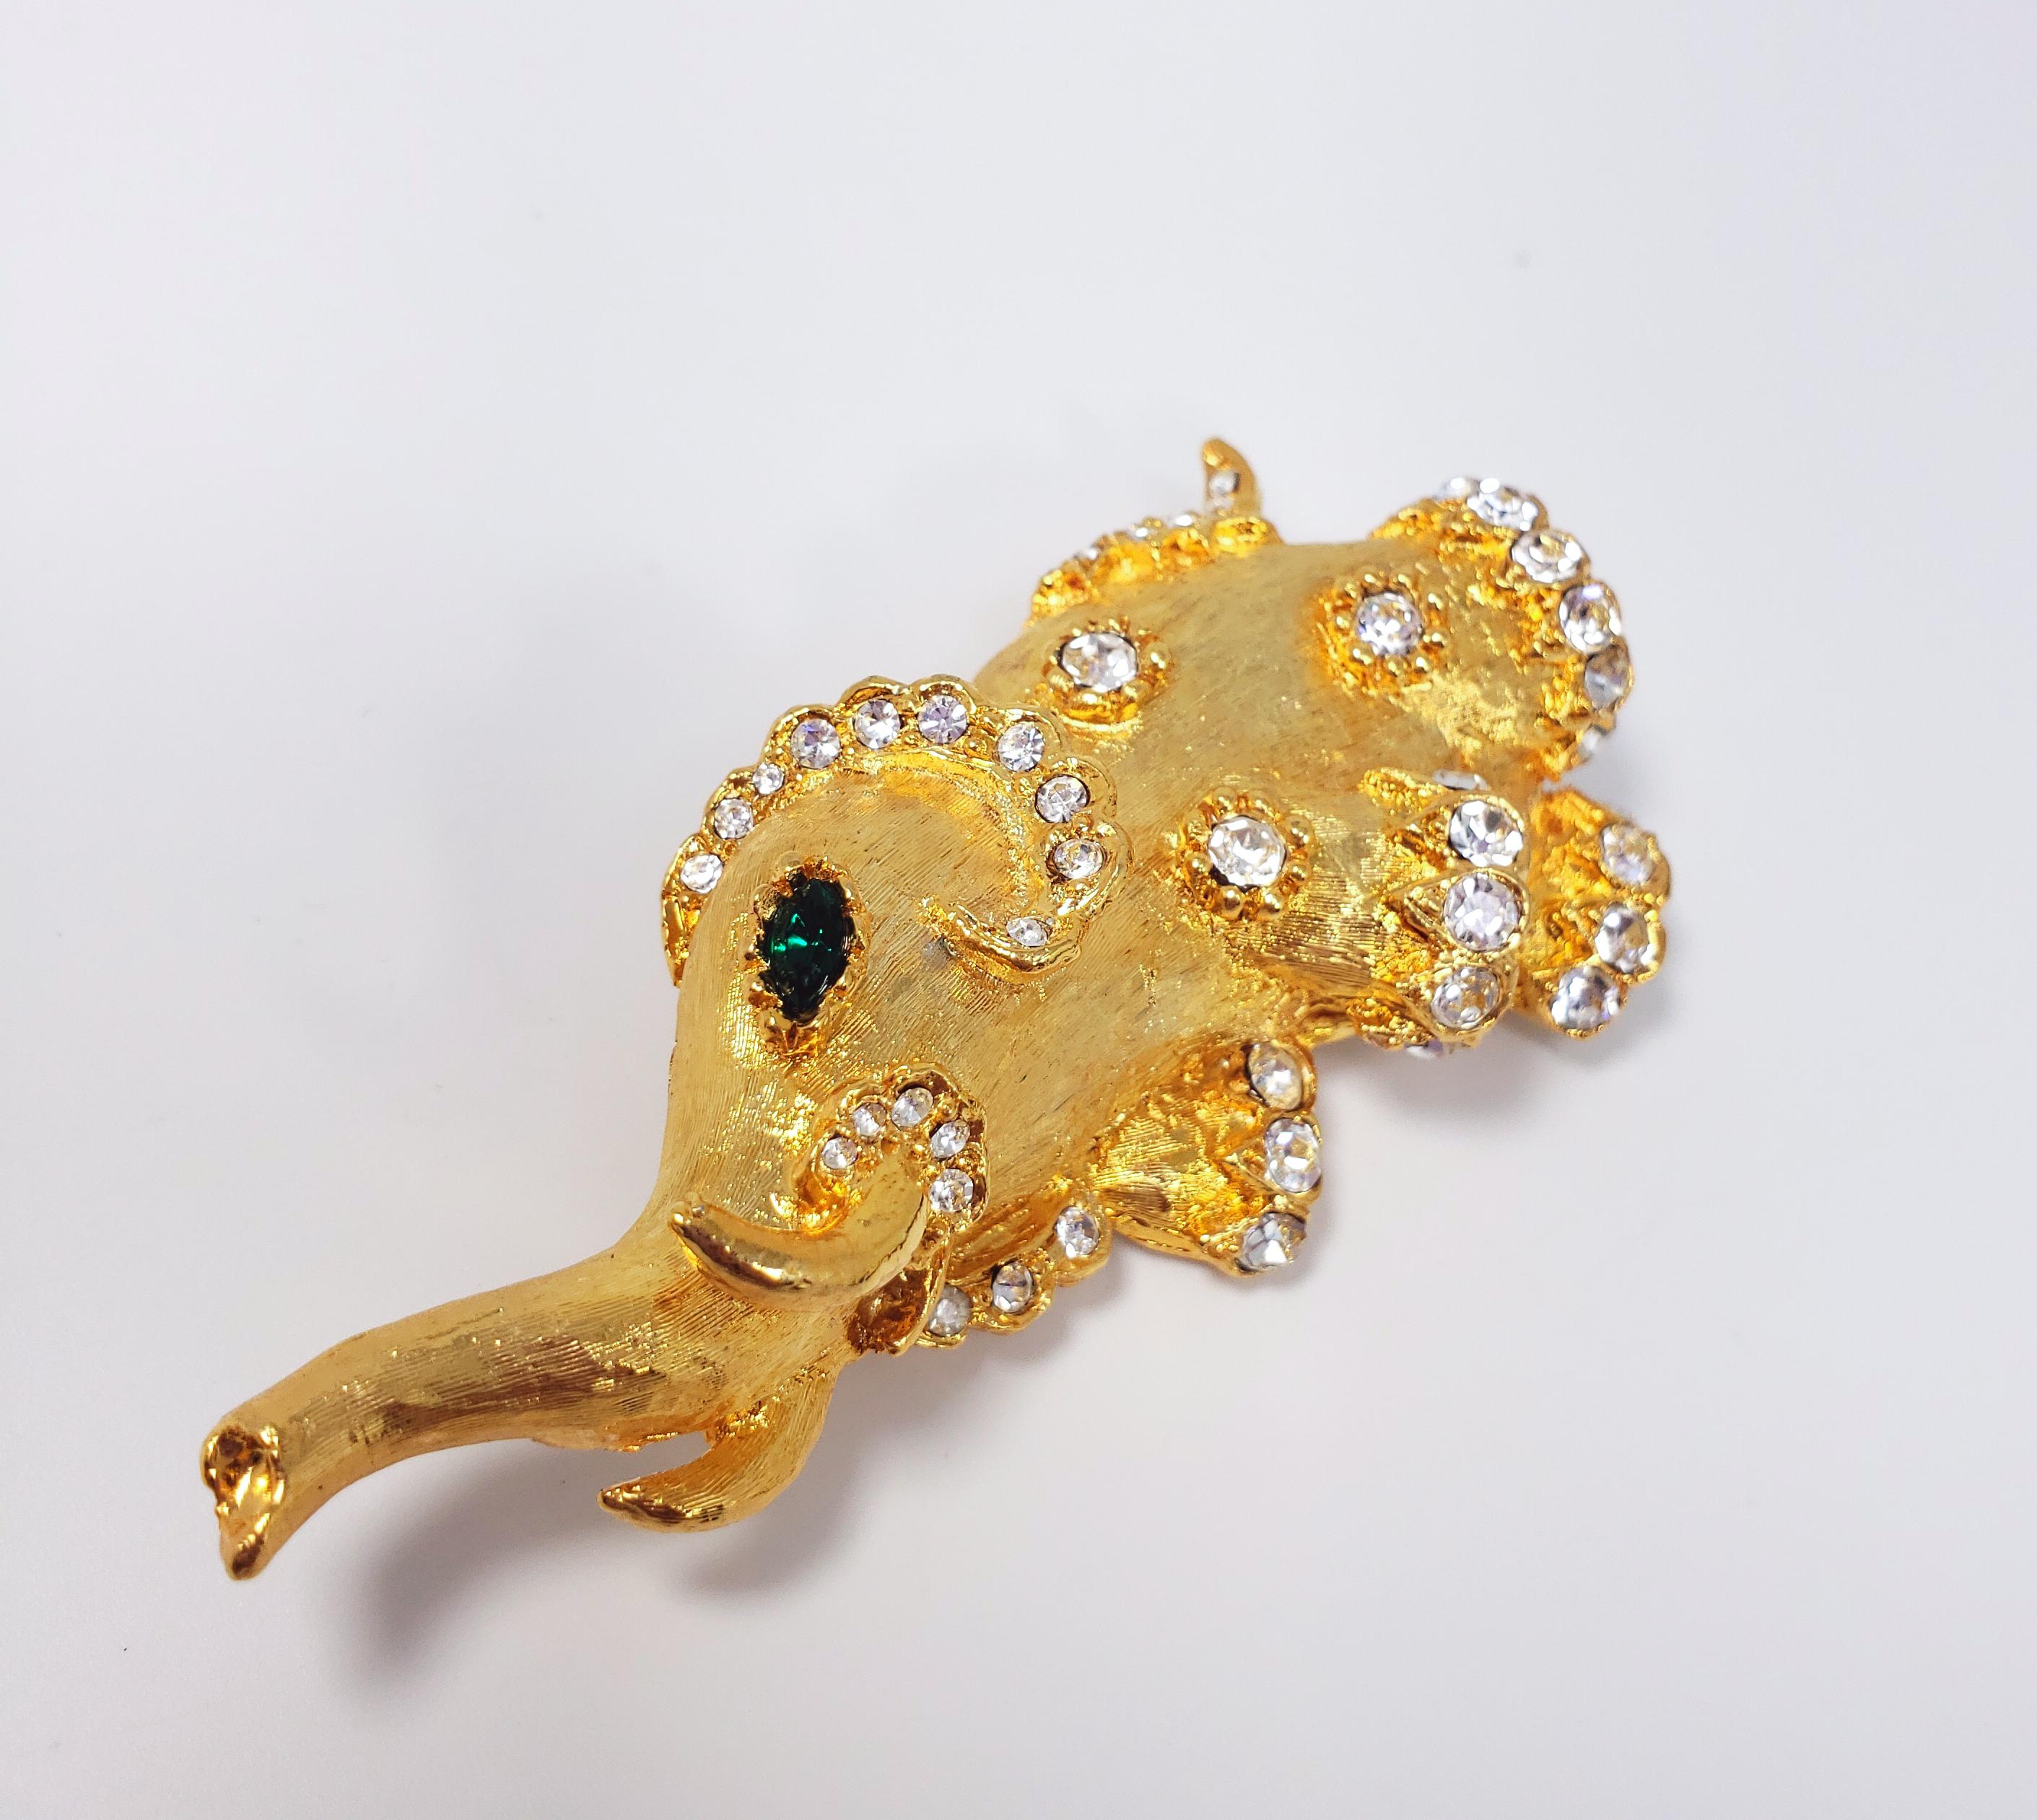 Cette broche excentrique de Kenneth Jay Lane représente un éléphant texturé en plaqué or jaune, avec deux yeux en cristal émeraude et des accents en cristal clair, le tout serti dans des billes décoratives. Fermeture par épingle de sûreté.

Poinçons